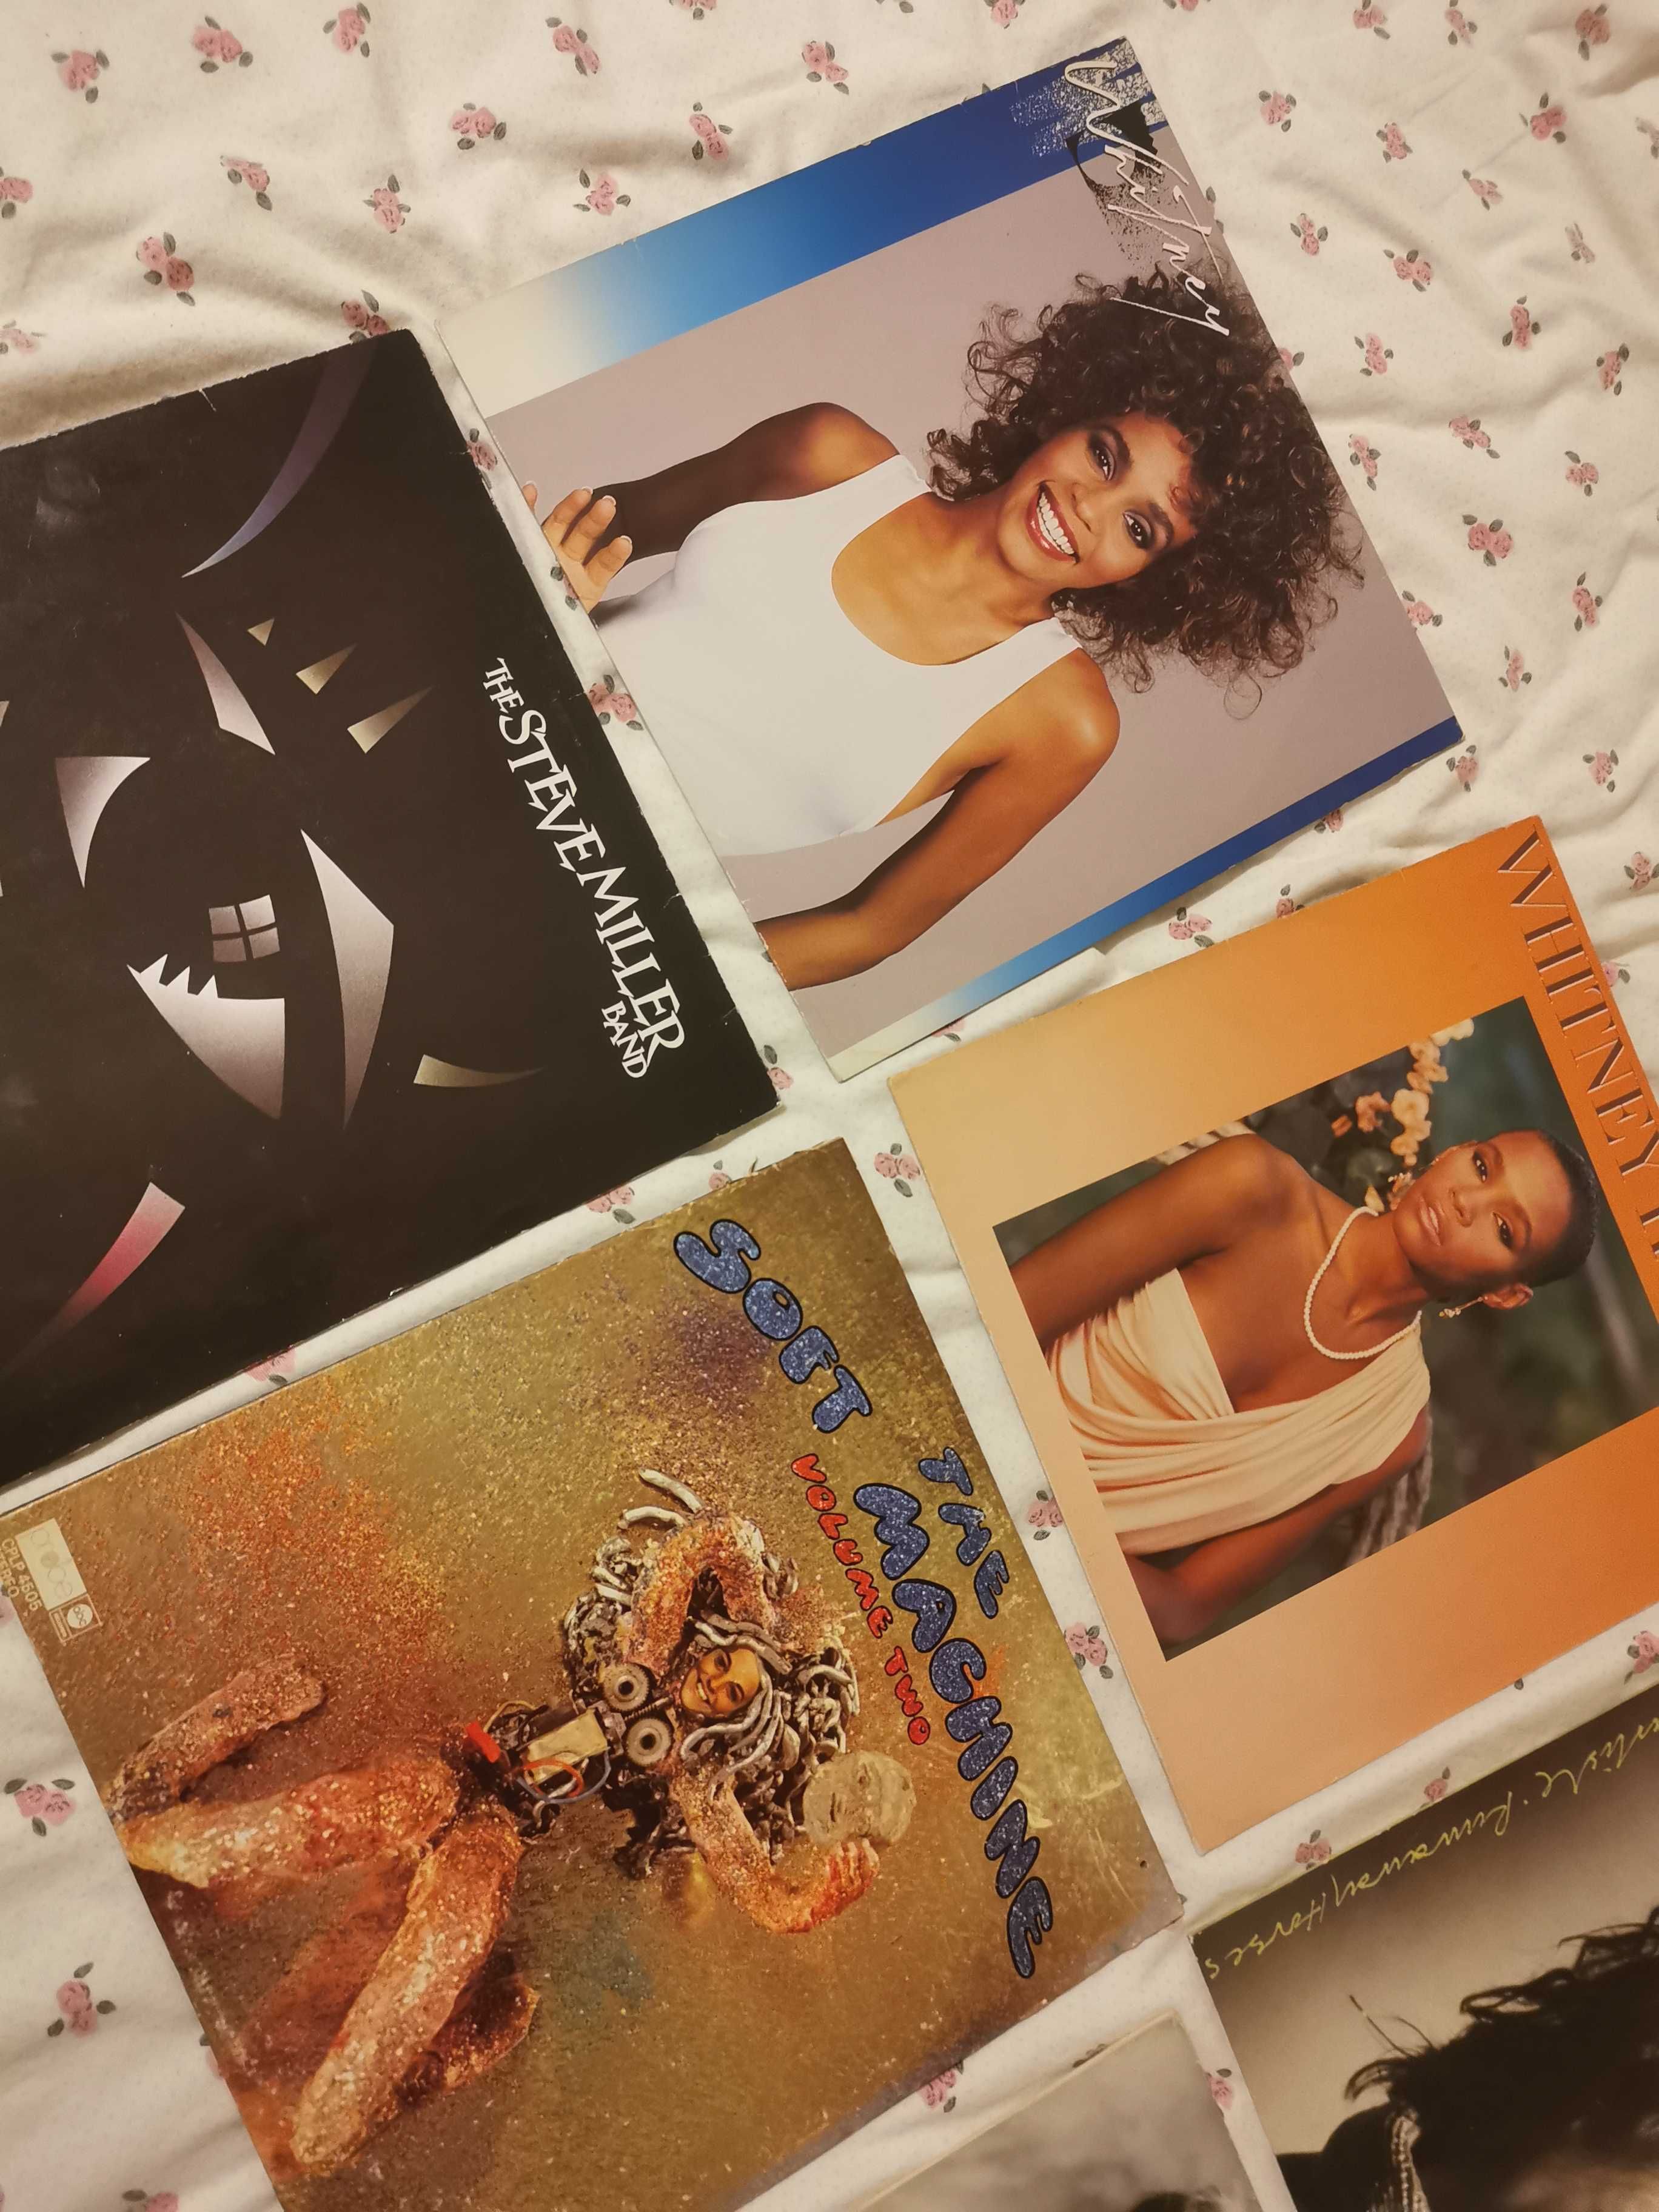 Whitney Houston Alphaville Soft Machine Steve Miller placa disc vinil